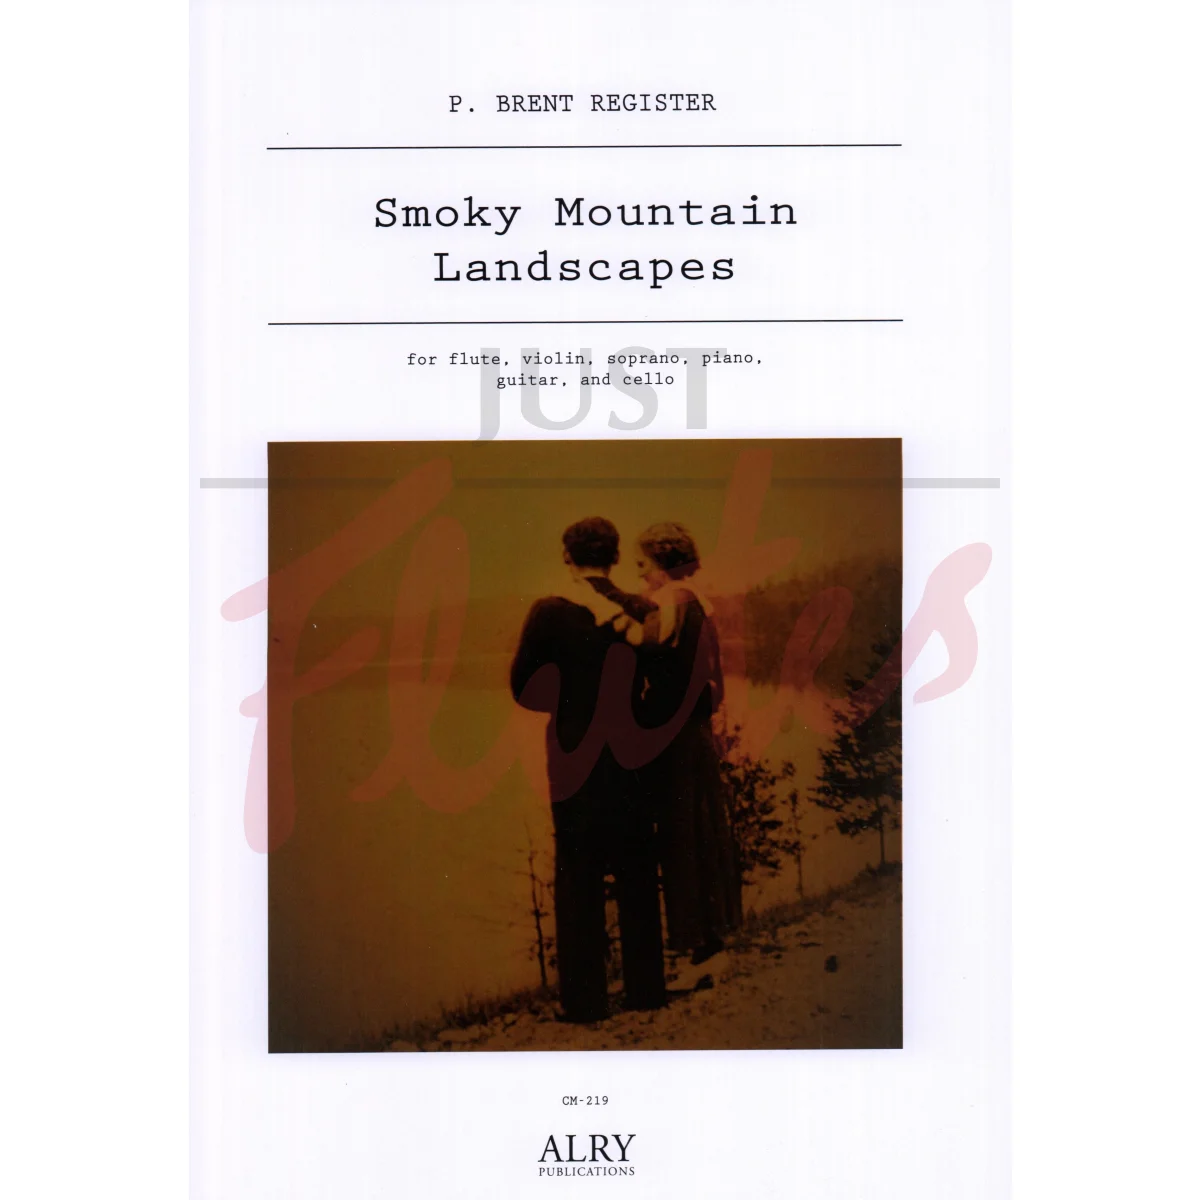 Smoky Mountain Landscapes for Flute, Violin, Soprano, Piano, Guitar and Cello